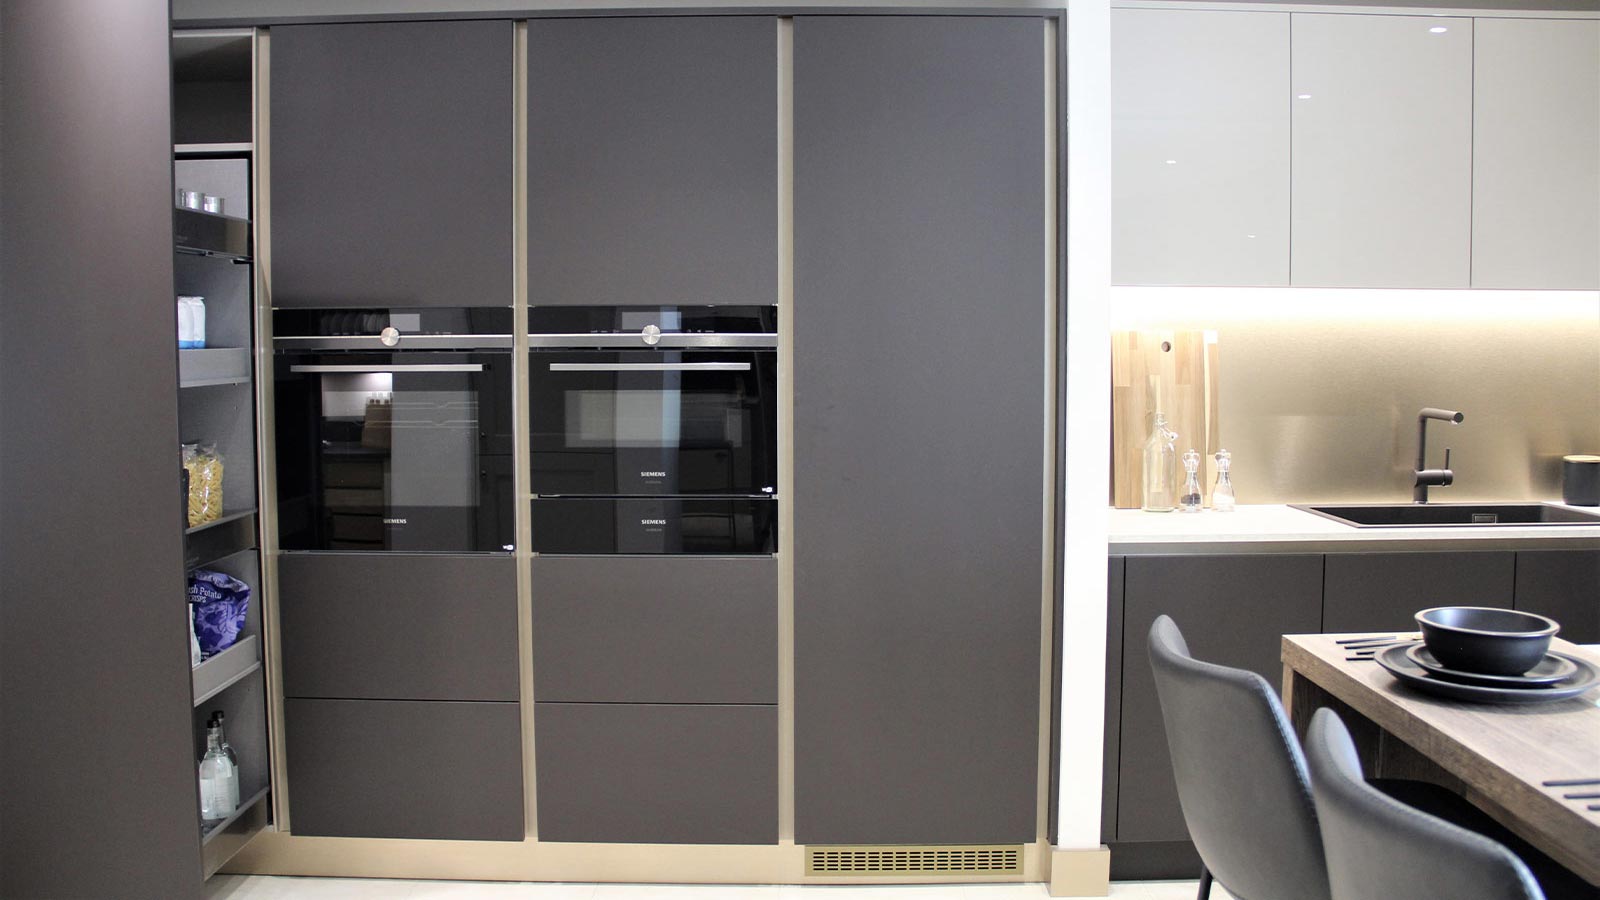 Dark cabinets and metallic handlerails in a modern luxury kitchen